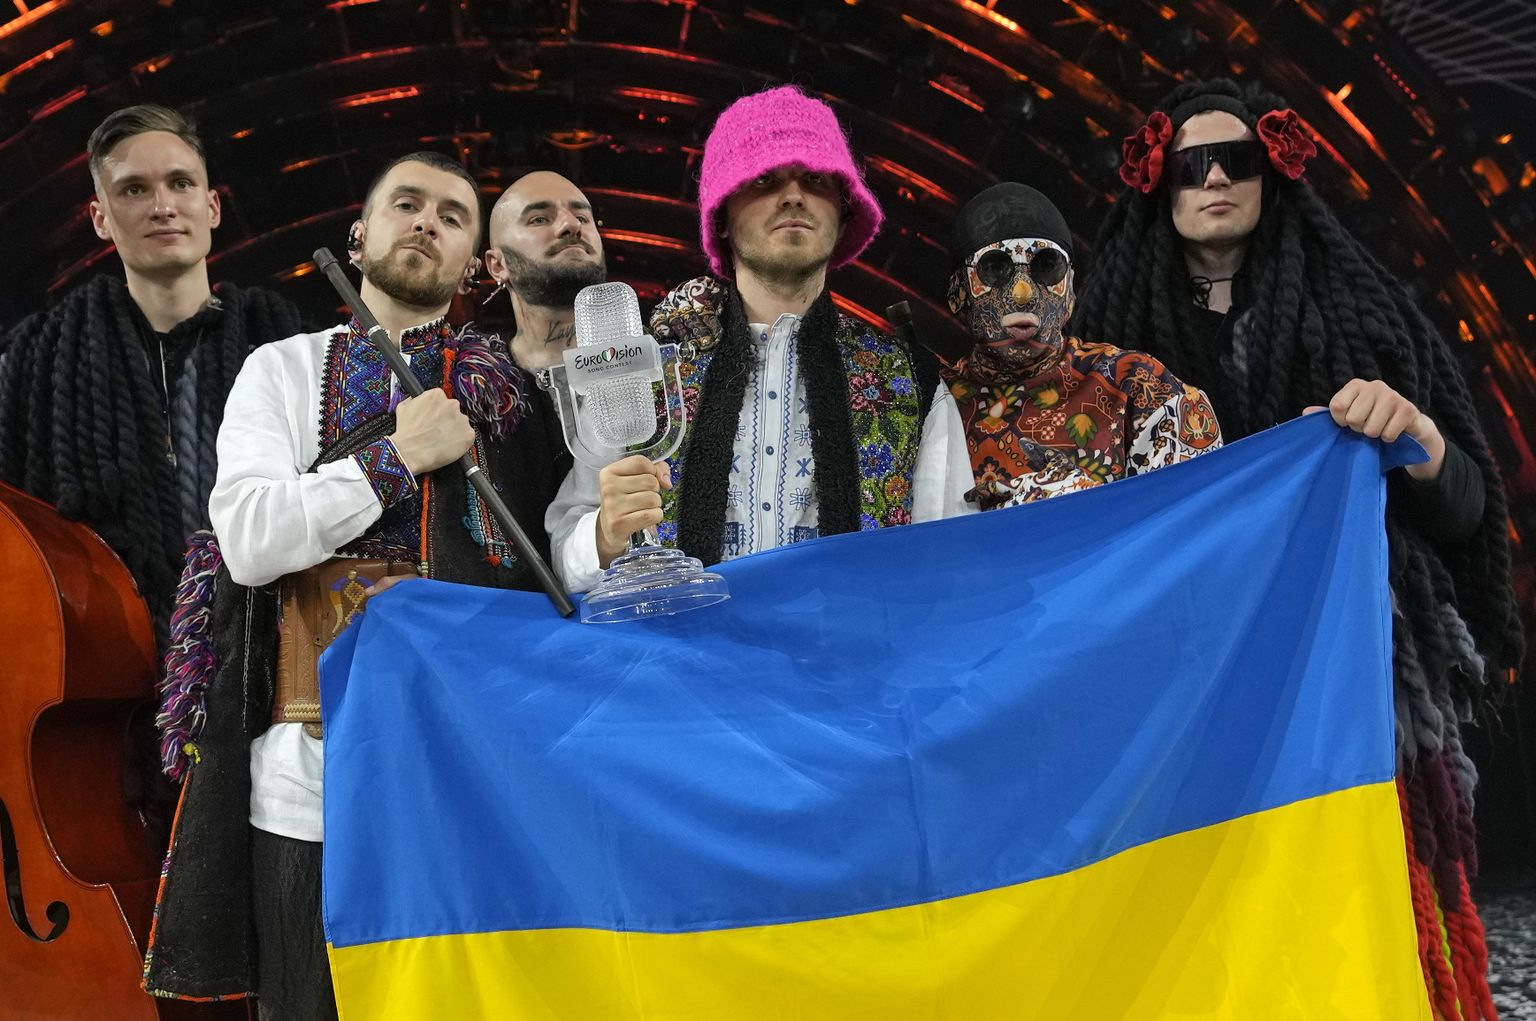 Группа Kalush Orchestra с песней Stefania победила на «Евровидении-2022» с общей рекордной оценкой в 631 балл. Это третья победа Украины на «Евровидении», но первая полностью украиноязычной песни.